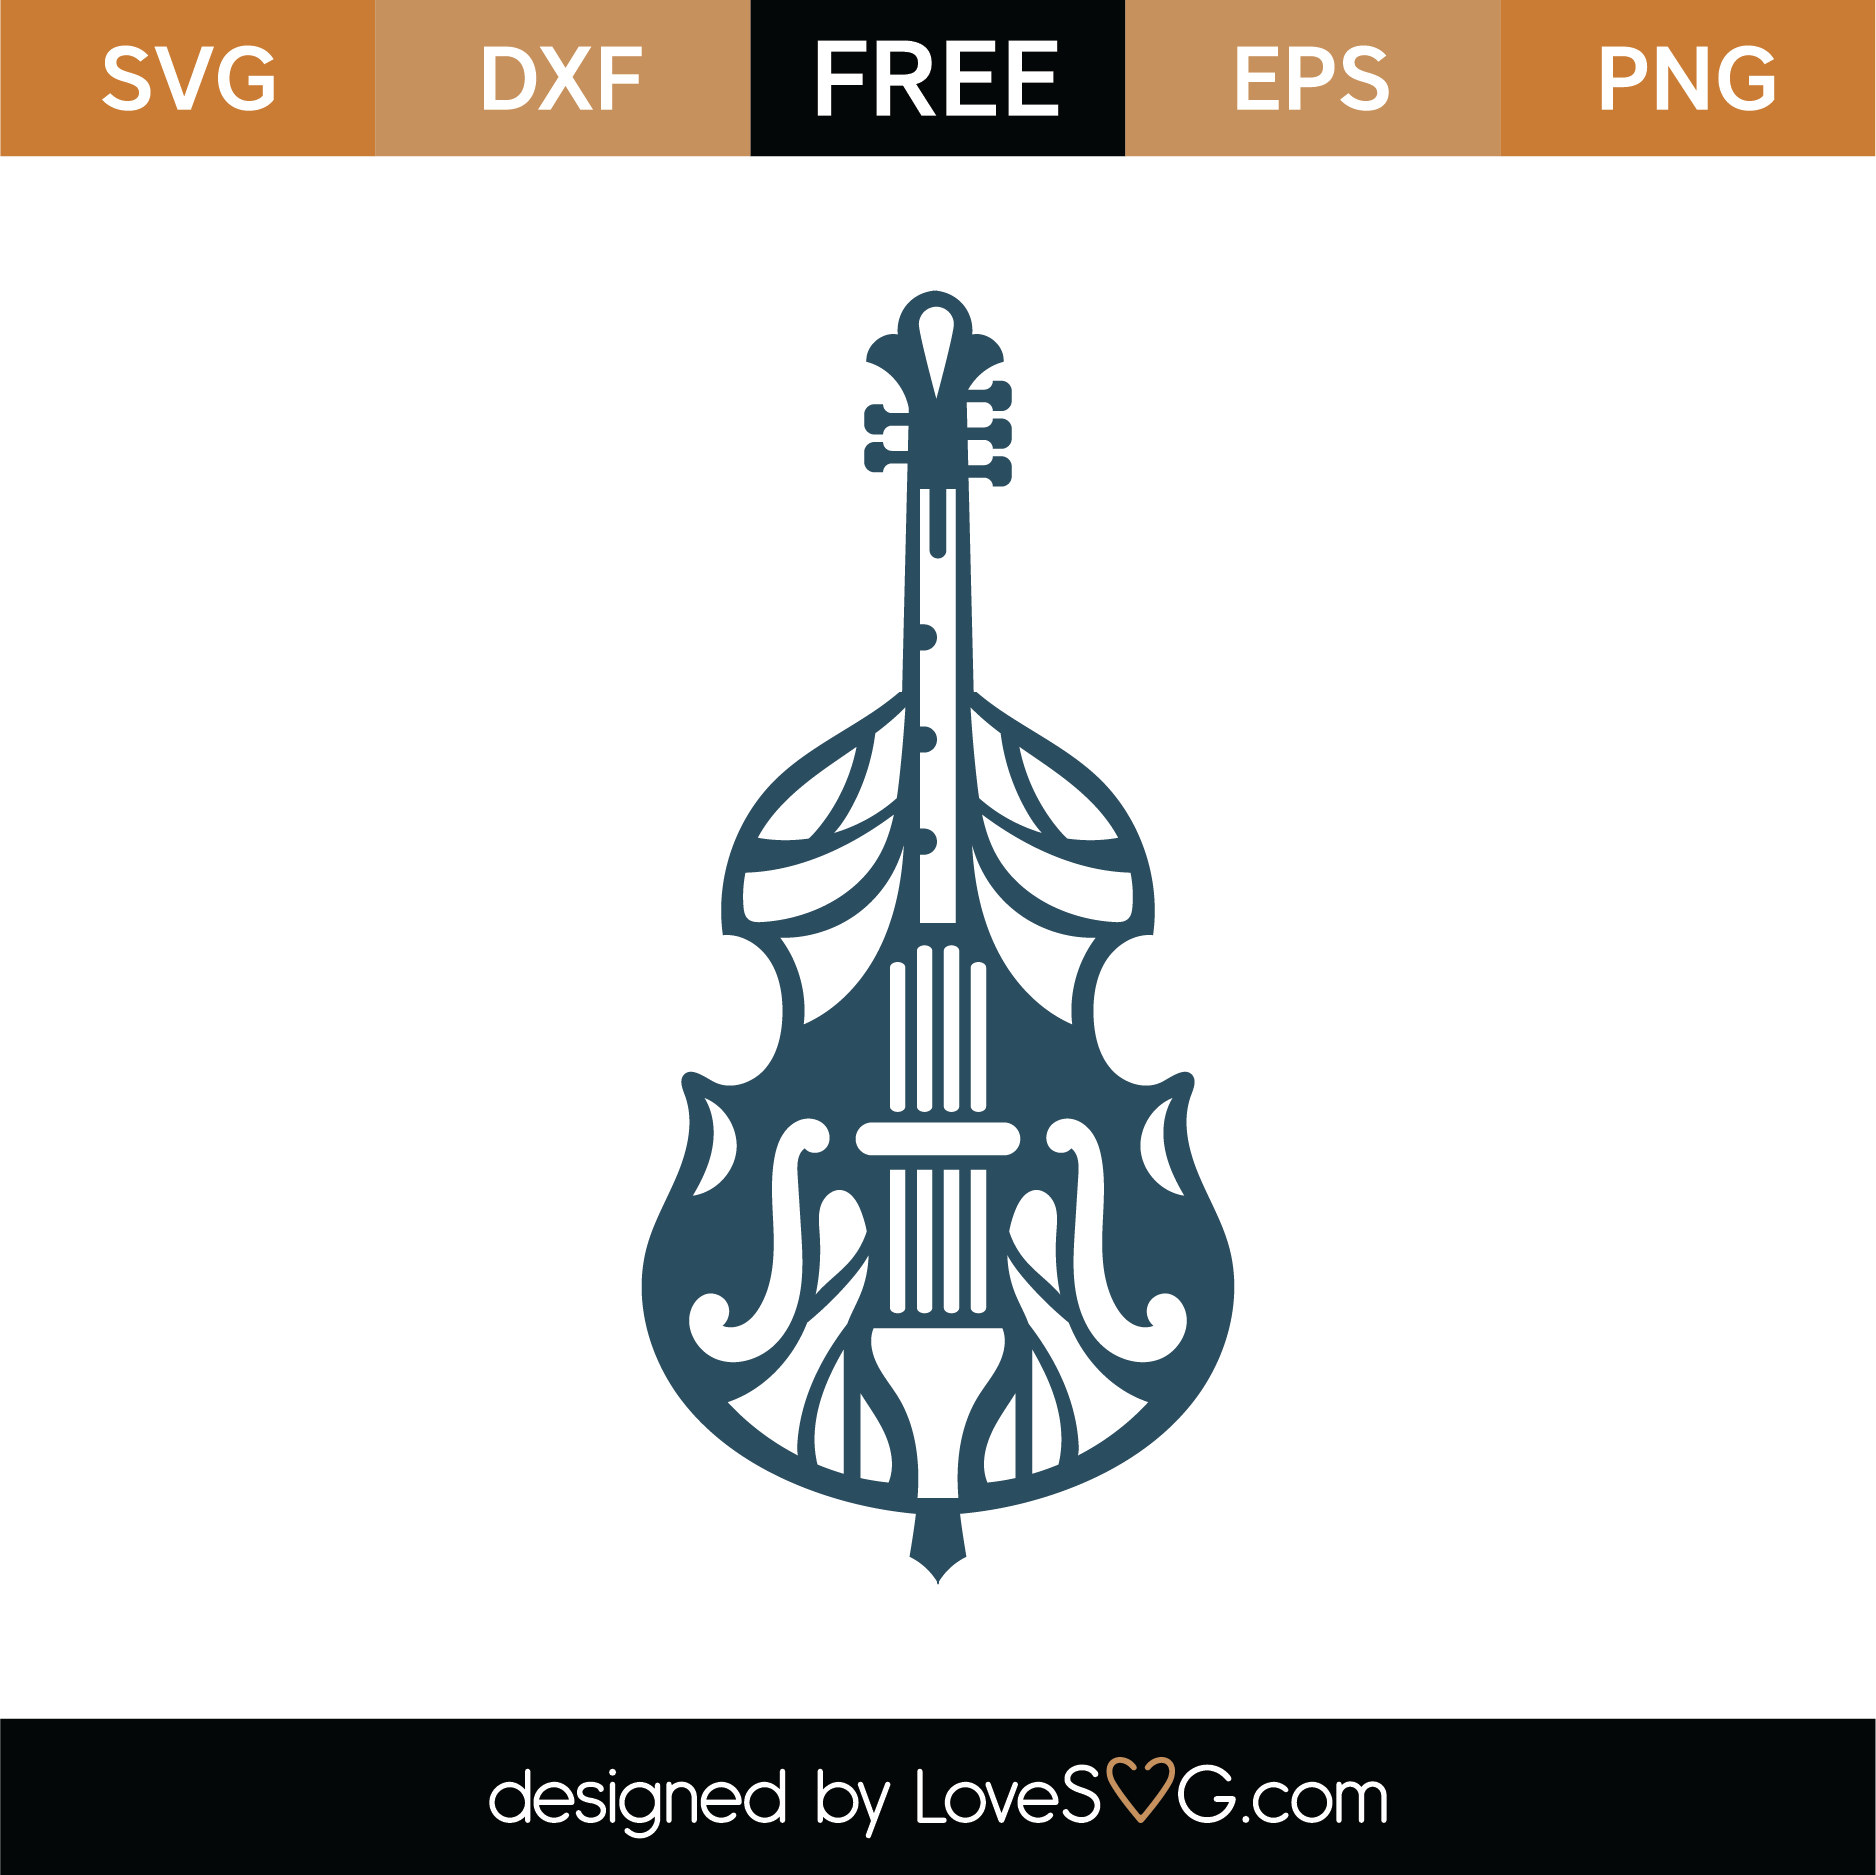 Download Free Cello Mandala SVG Cut File | Lovesvg.com